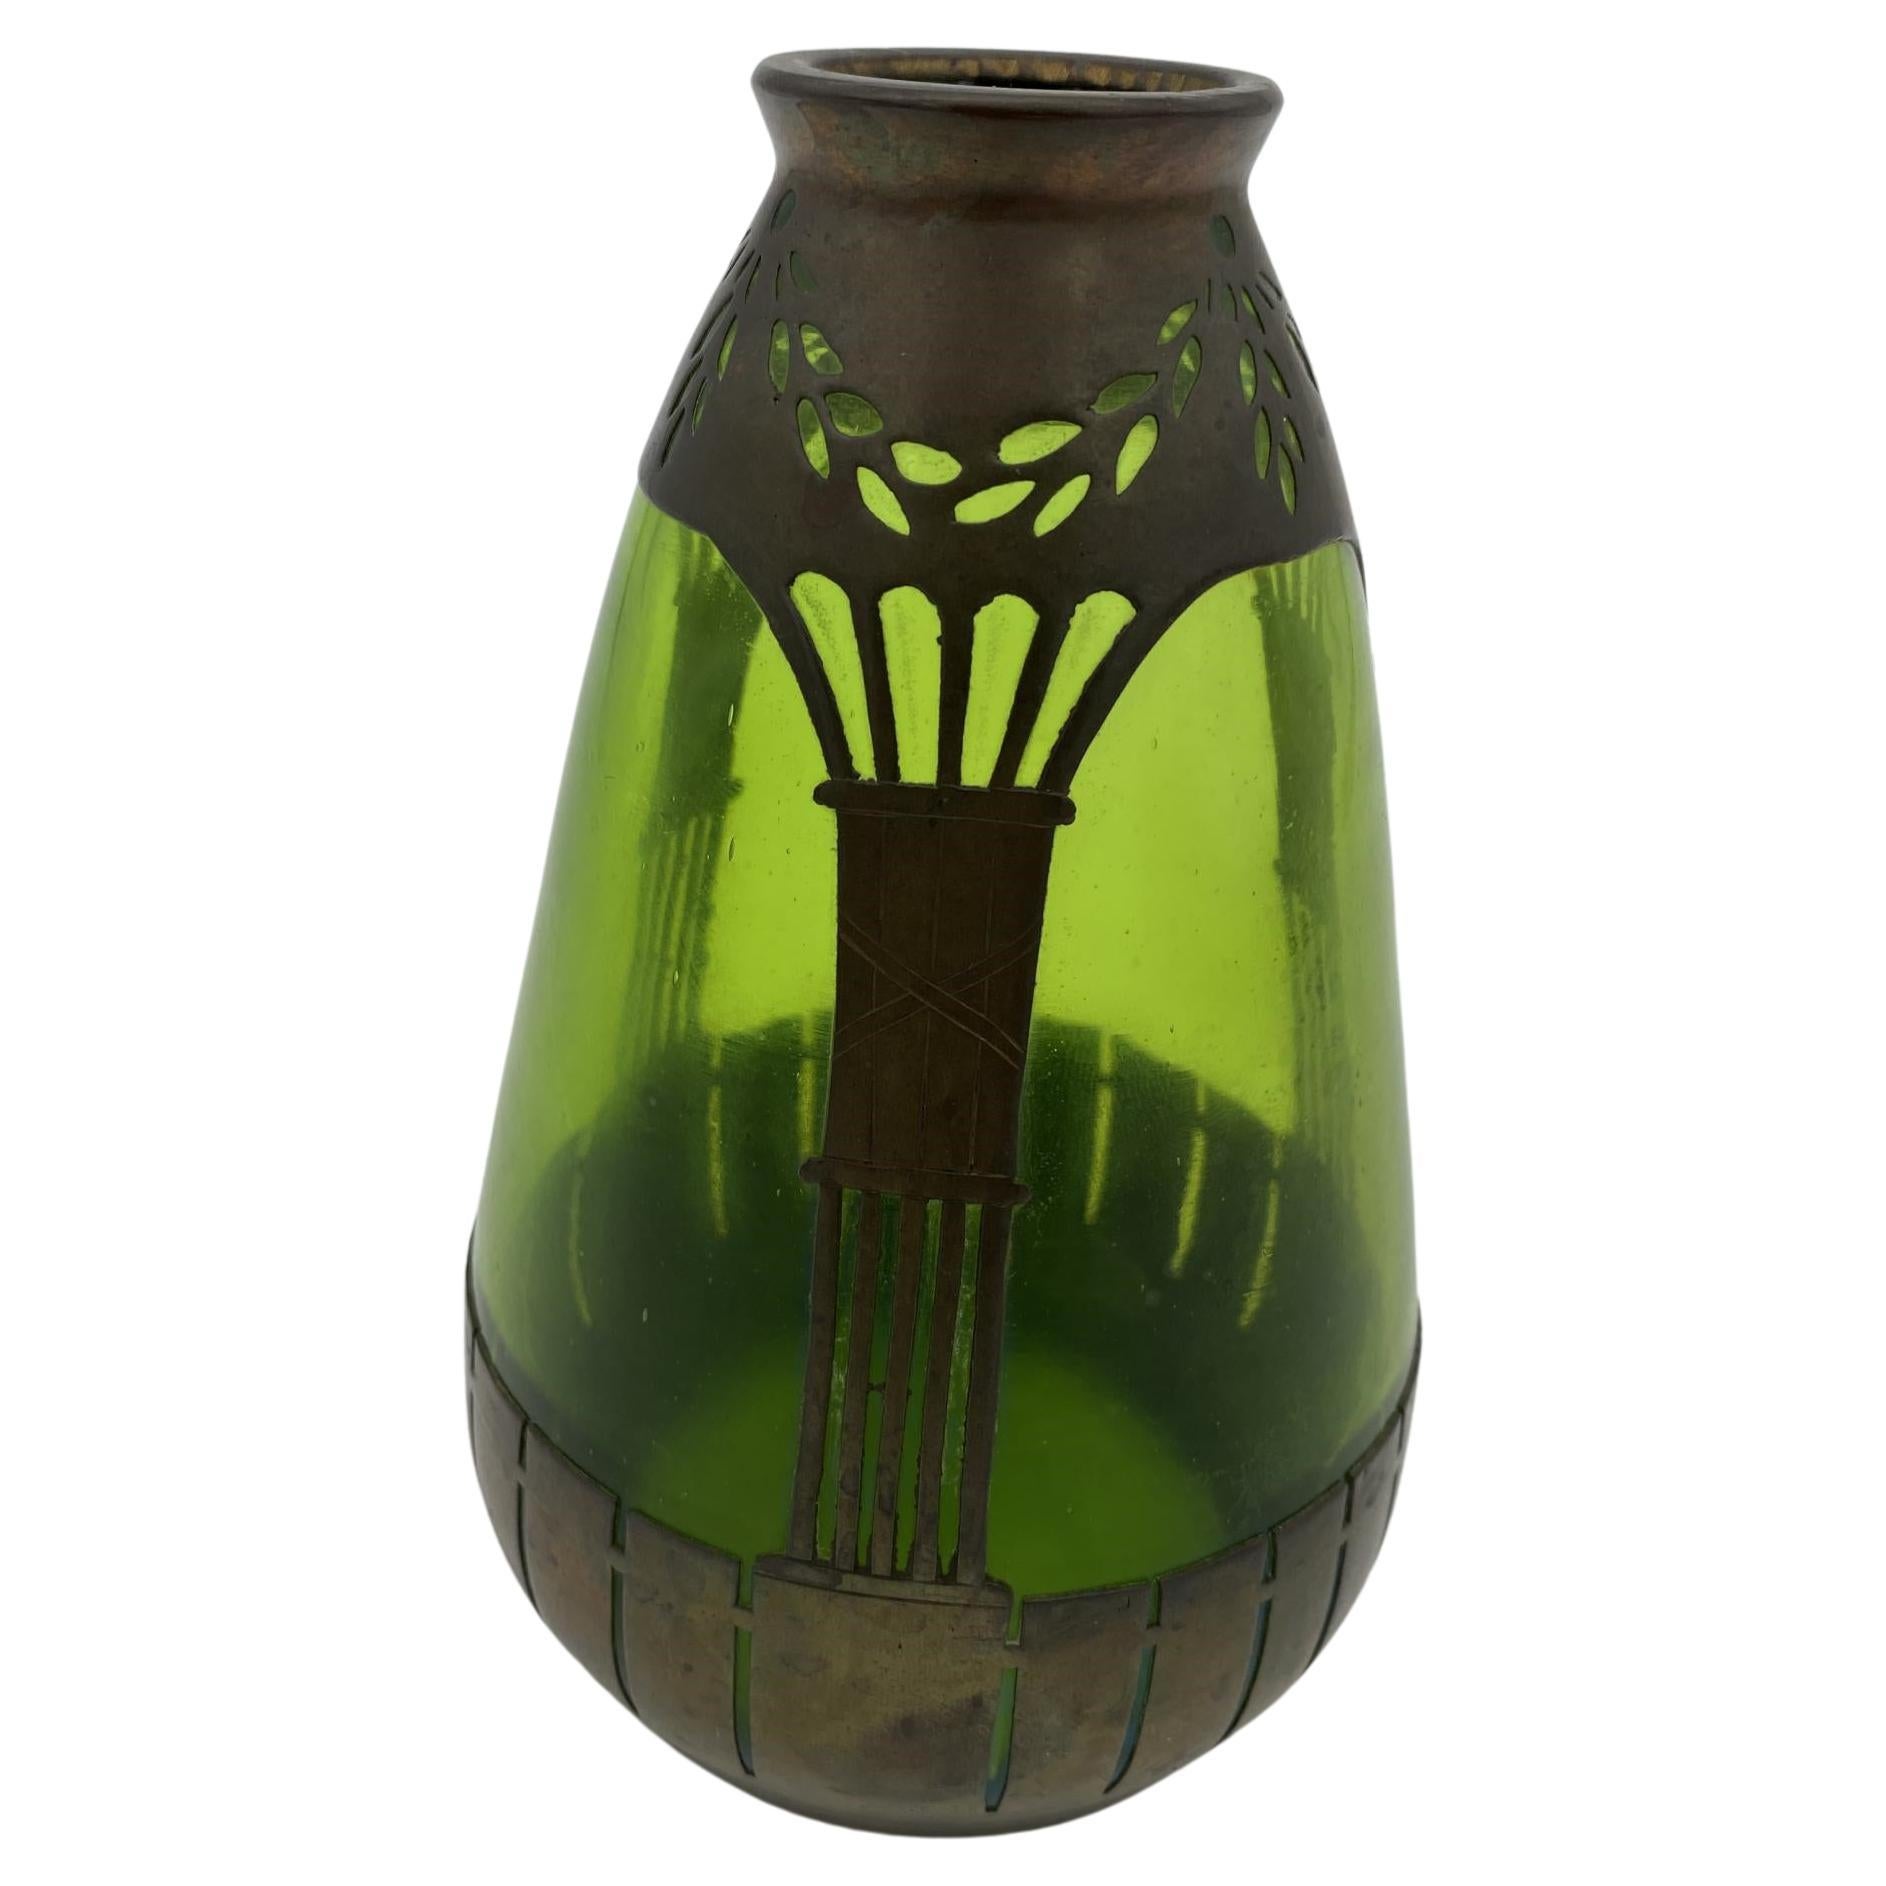 Vase en cuivre et verre vert de style Art nouveau français